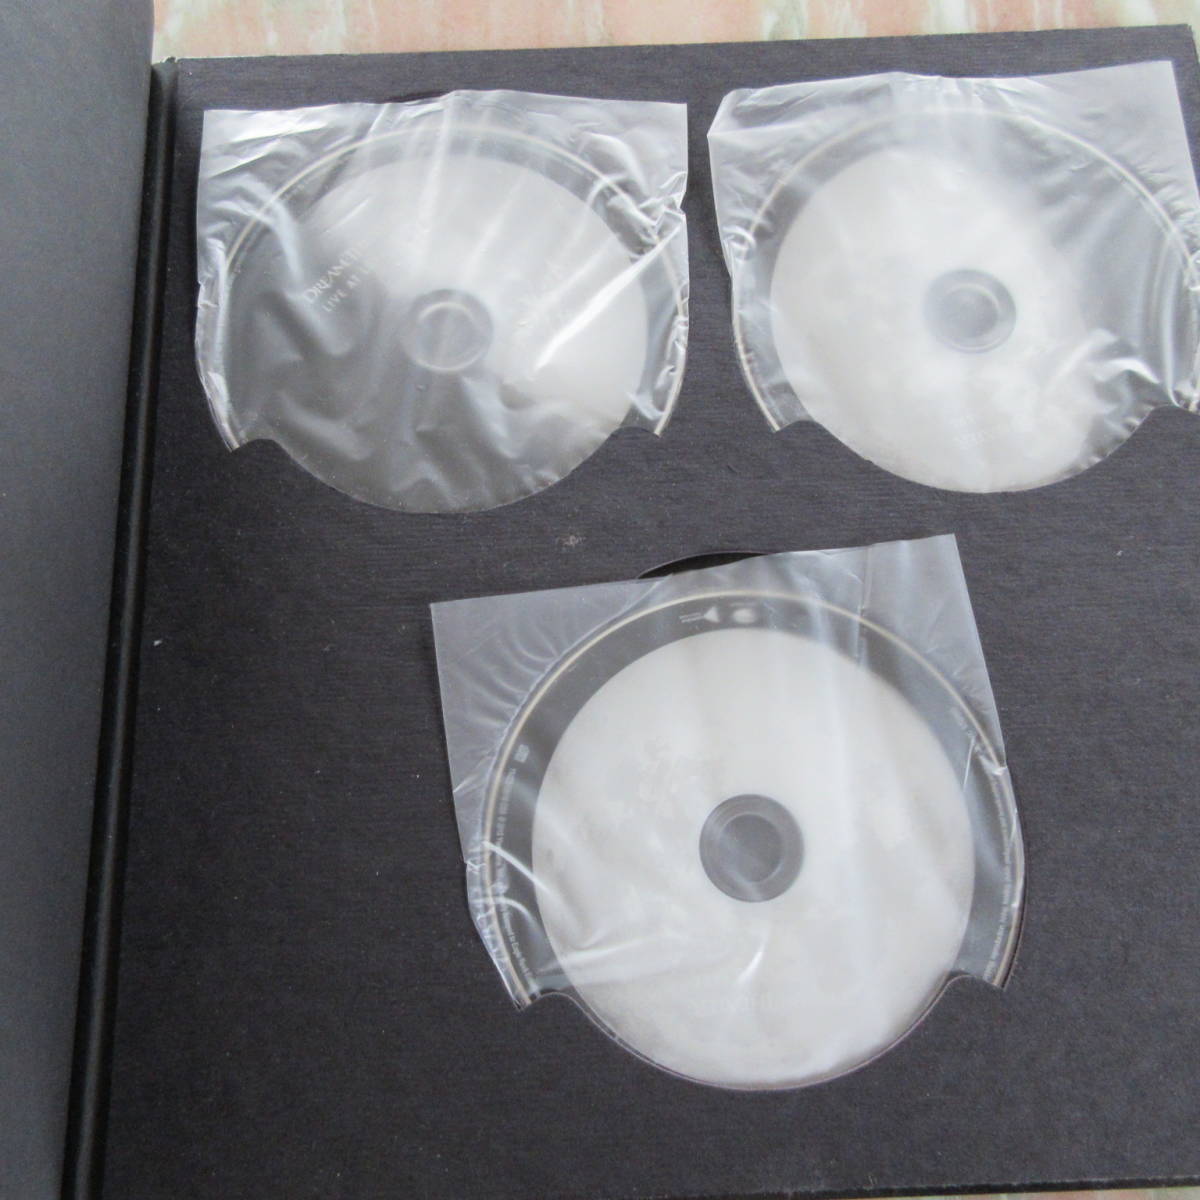 CD ドリーム・シアター/ライヴ・アット・ルナ・パーク 2012 デラックス・エディション Blu-ray 2DVD 3CD ブックレット CDジャケット